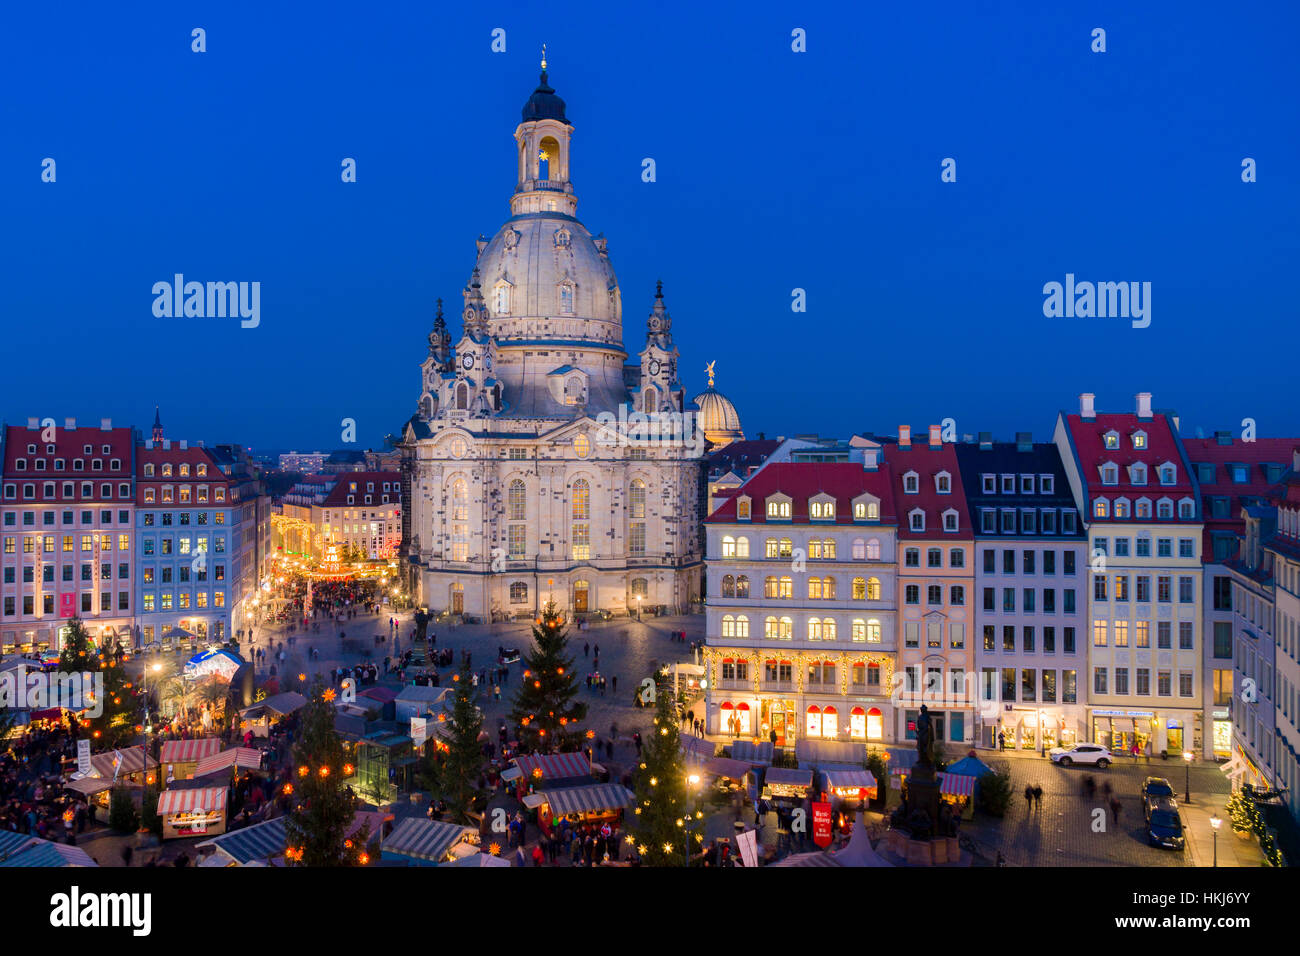 De style Renaissance historique du marché de Noël à Neumarkt en face de l'église Notre Dame, Dresde, Saxe, Allemagne Banque D'Images